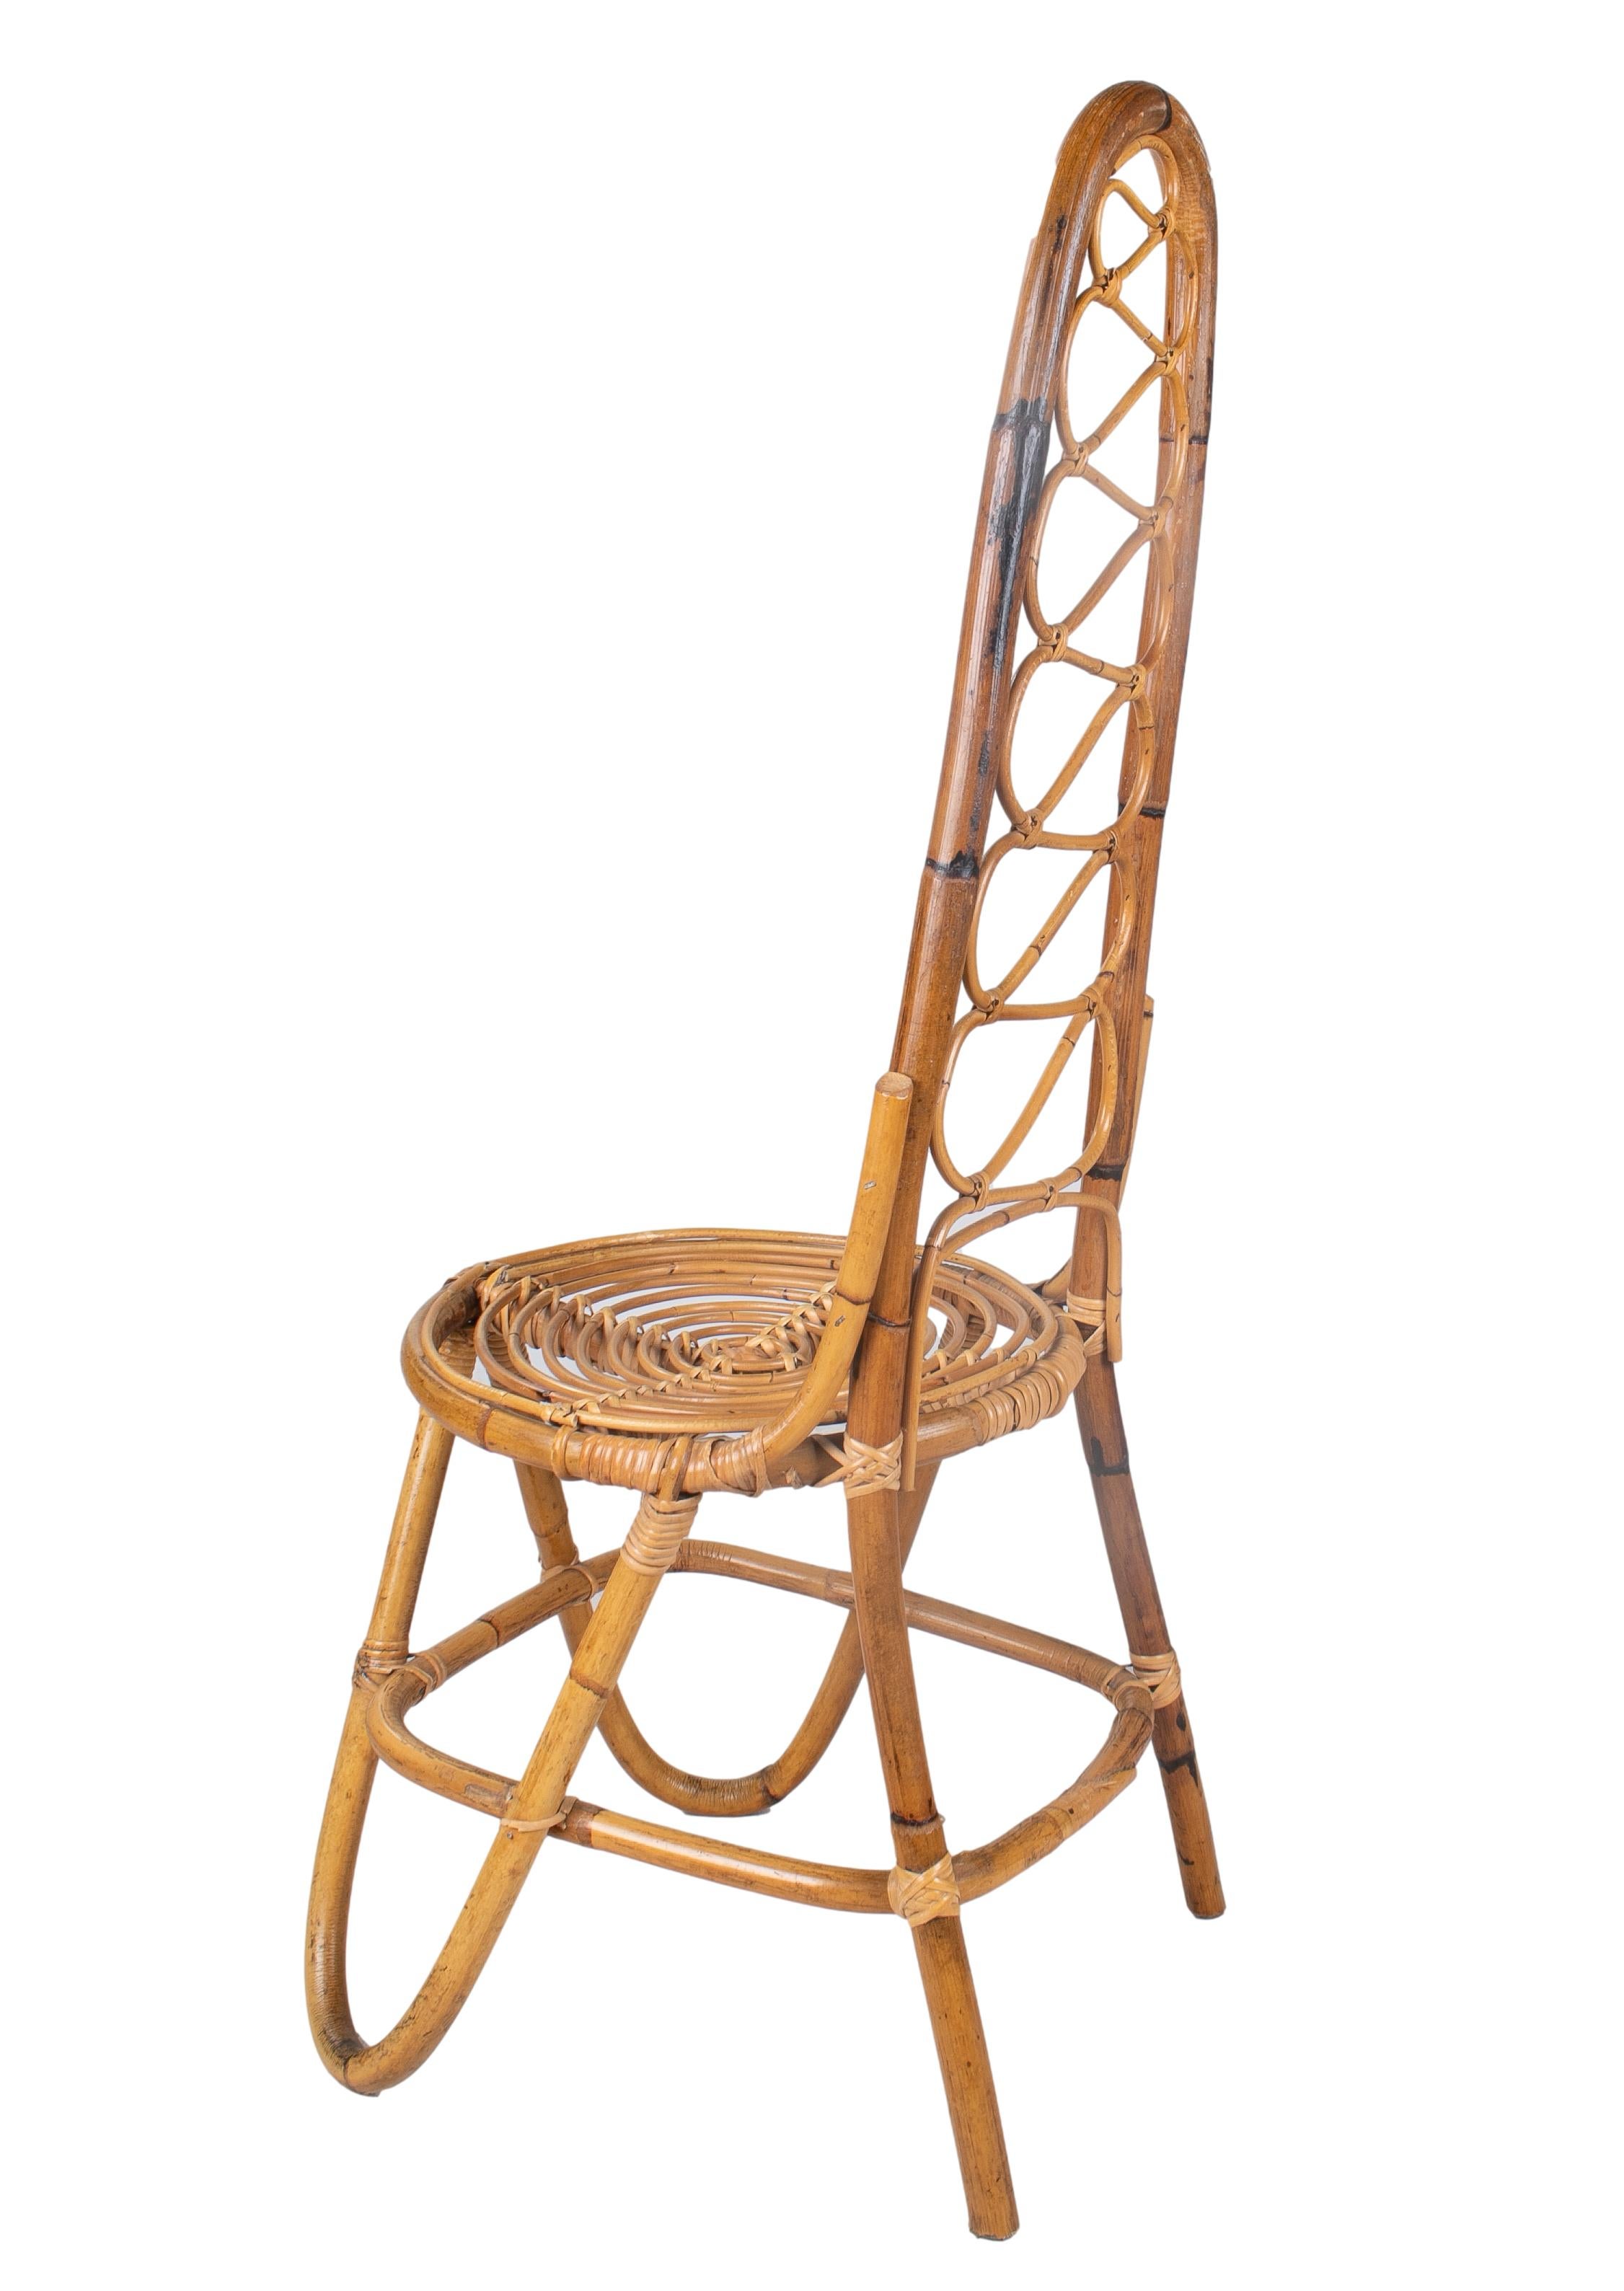 Dutch MCM Rattan Chairs by Dirk Van Sliedrecht for Rohe Noordwolde, 1950 For Sale